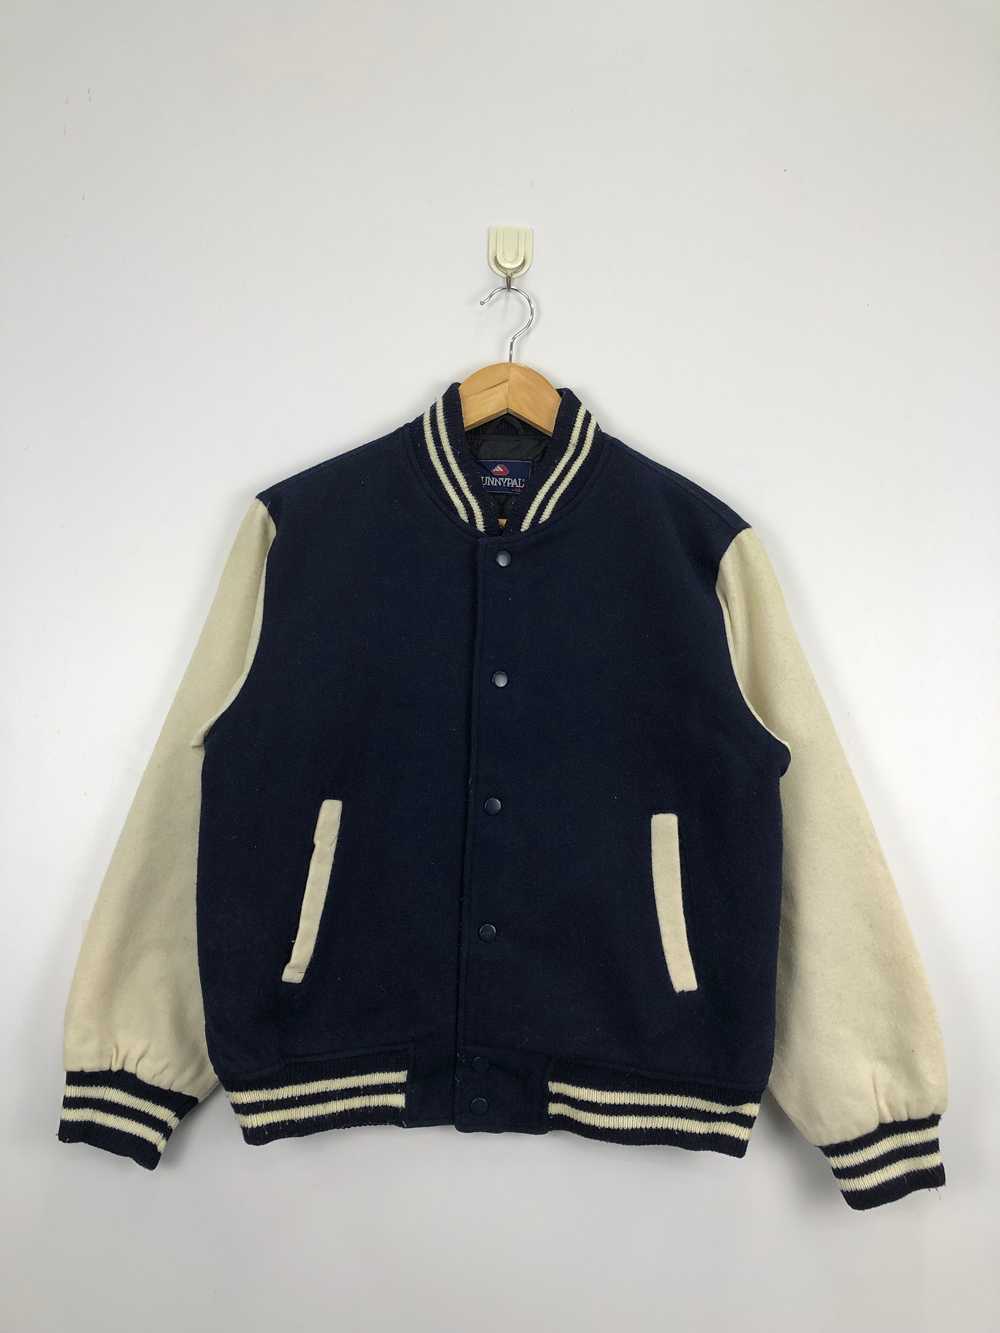 Vintage - Vintage Sunnypal Wool Varsity Jacket - image 1